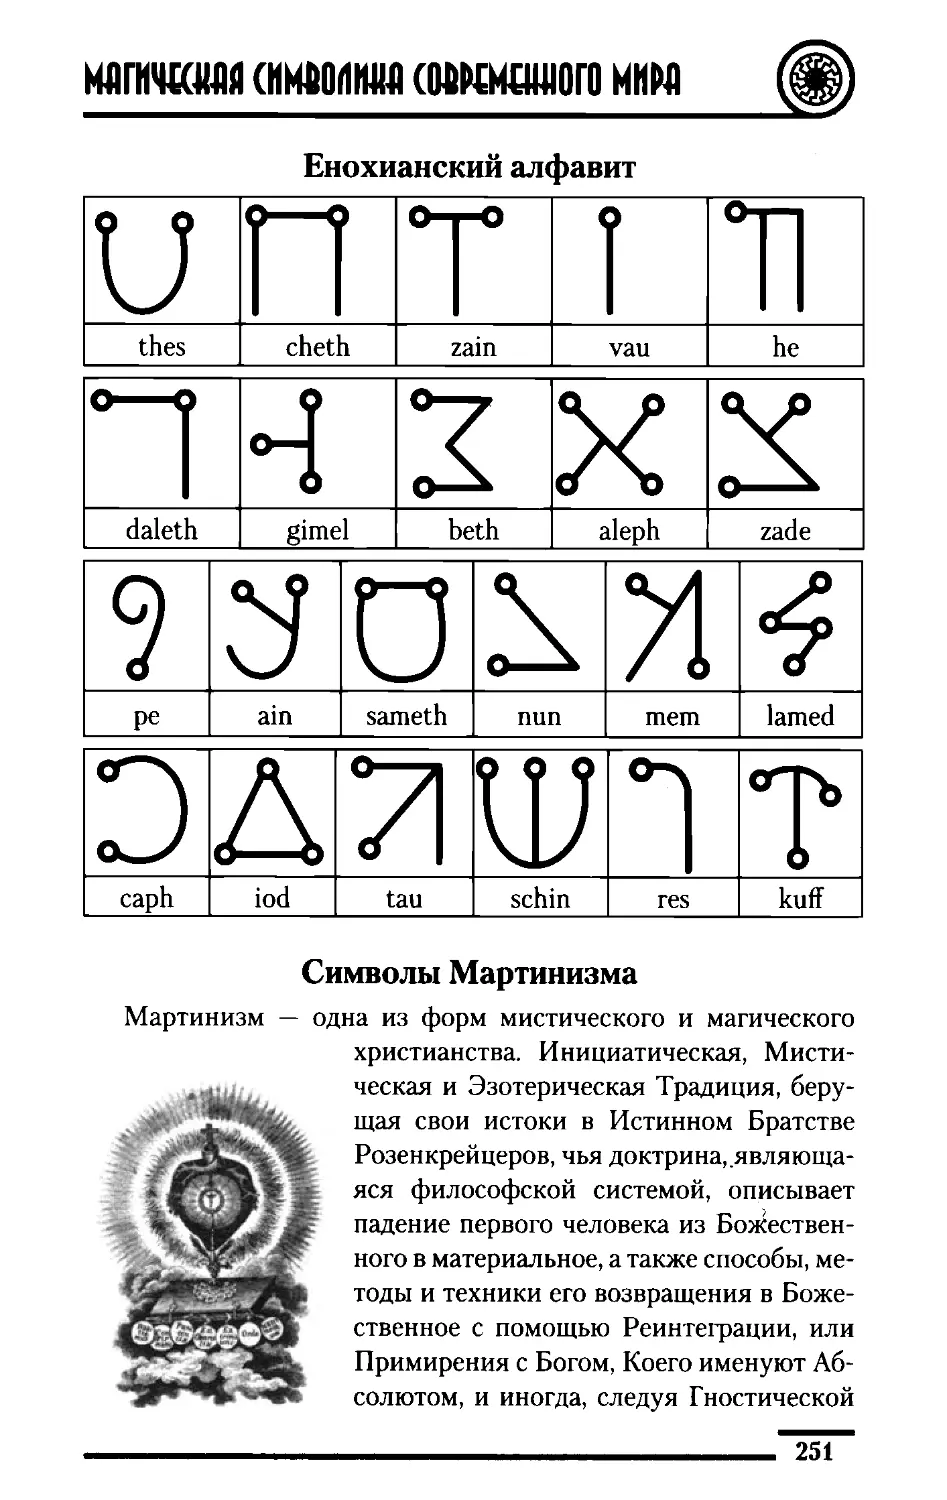 ﻿Енохианский алфави
﻿Символы Мартинизм